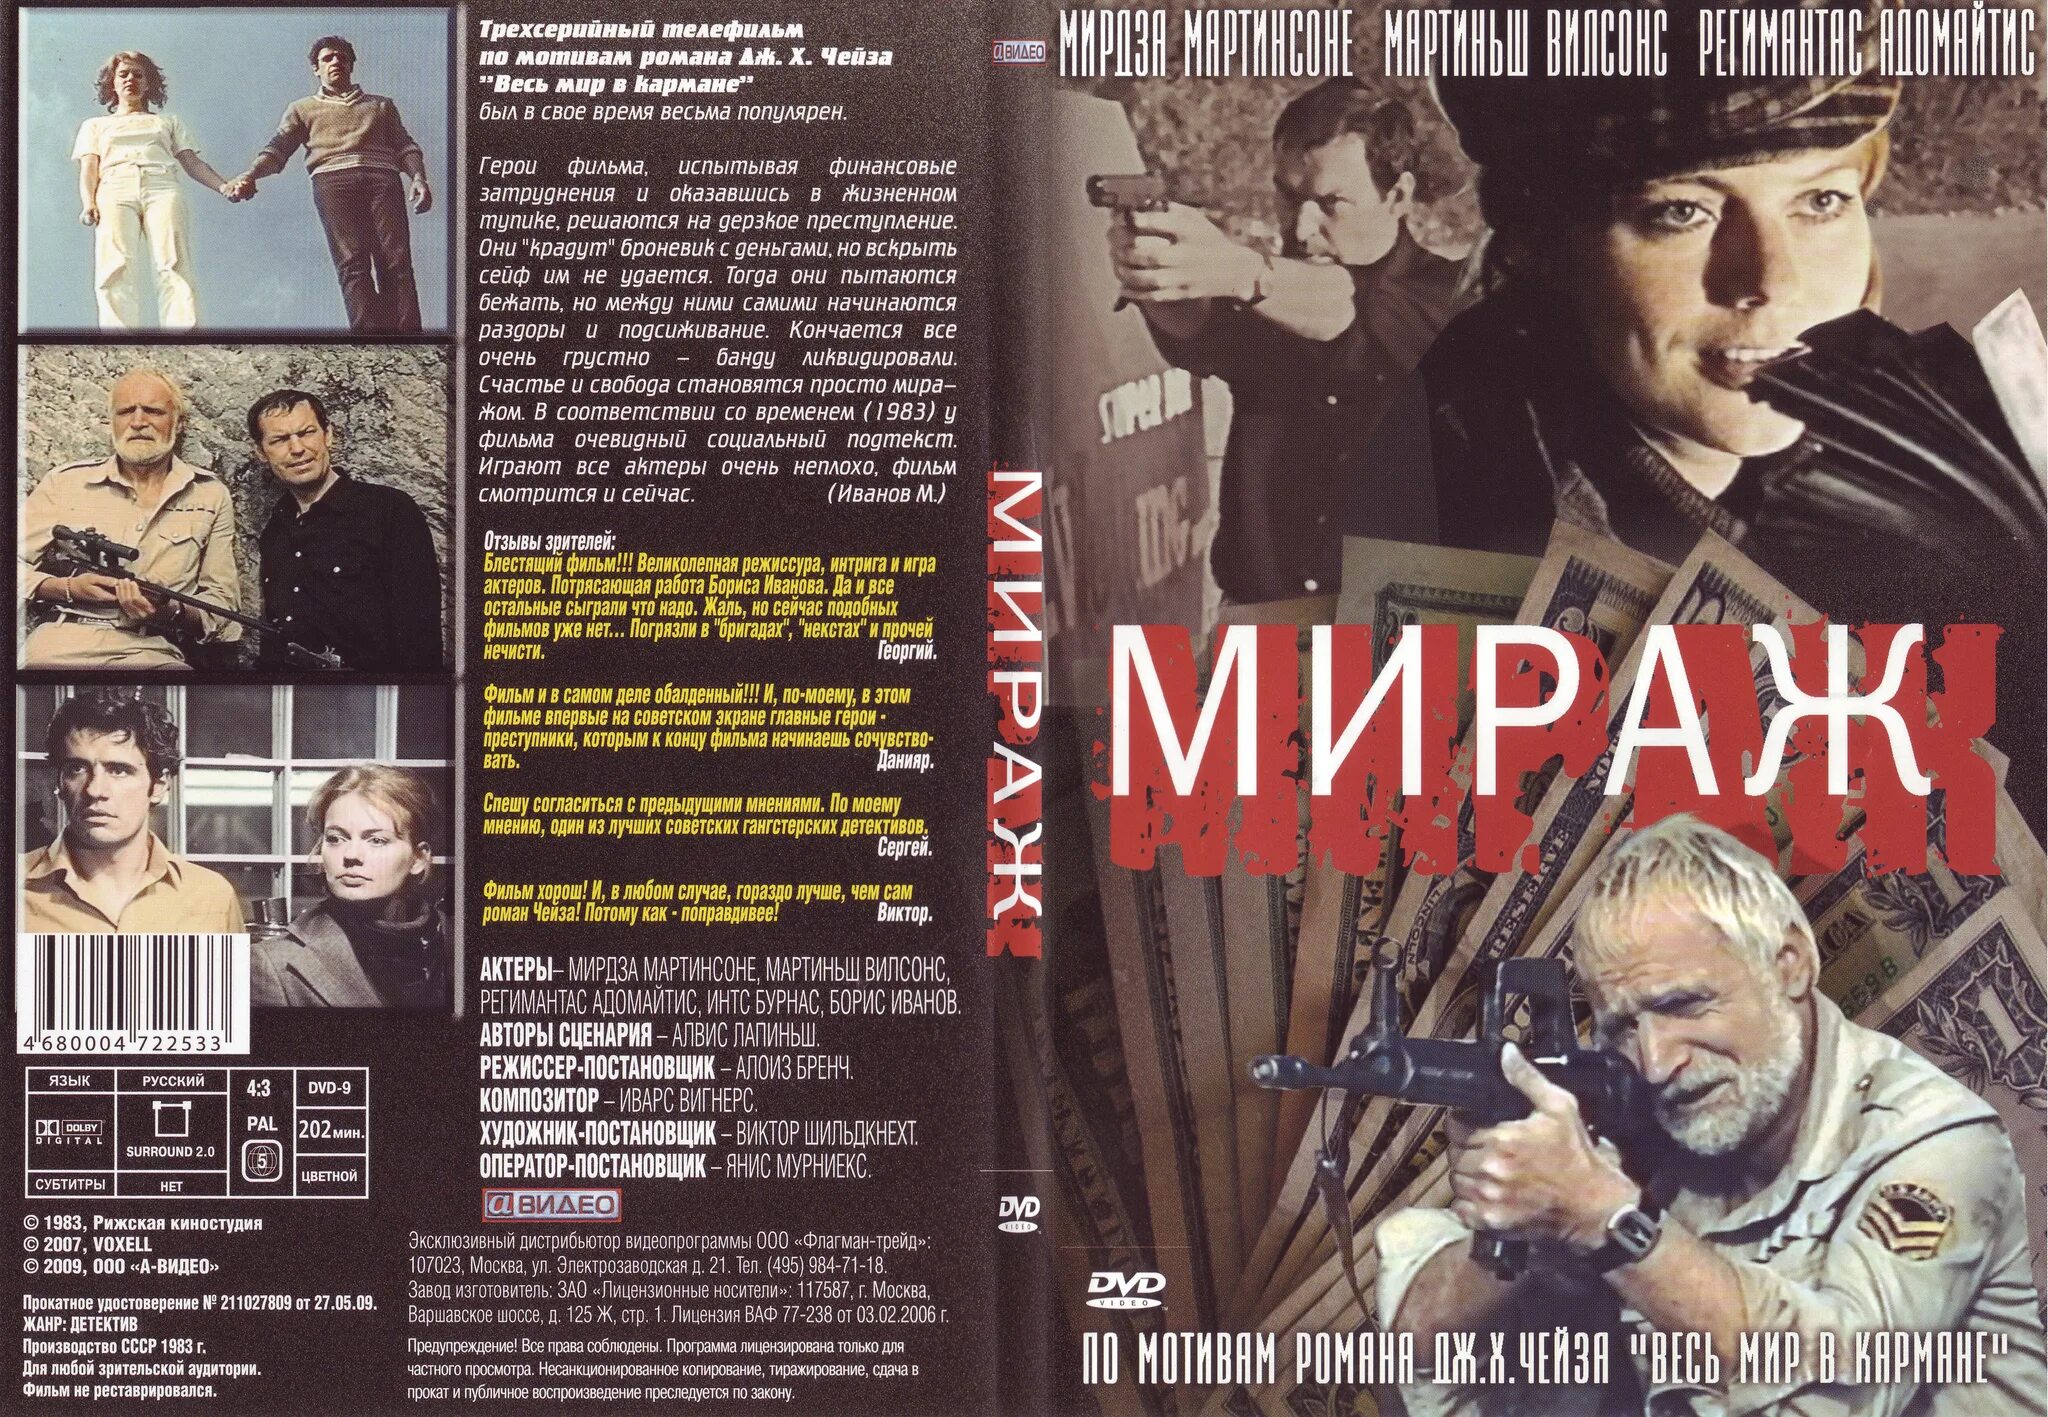 «Мираж» (1983) обложки DVD.